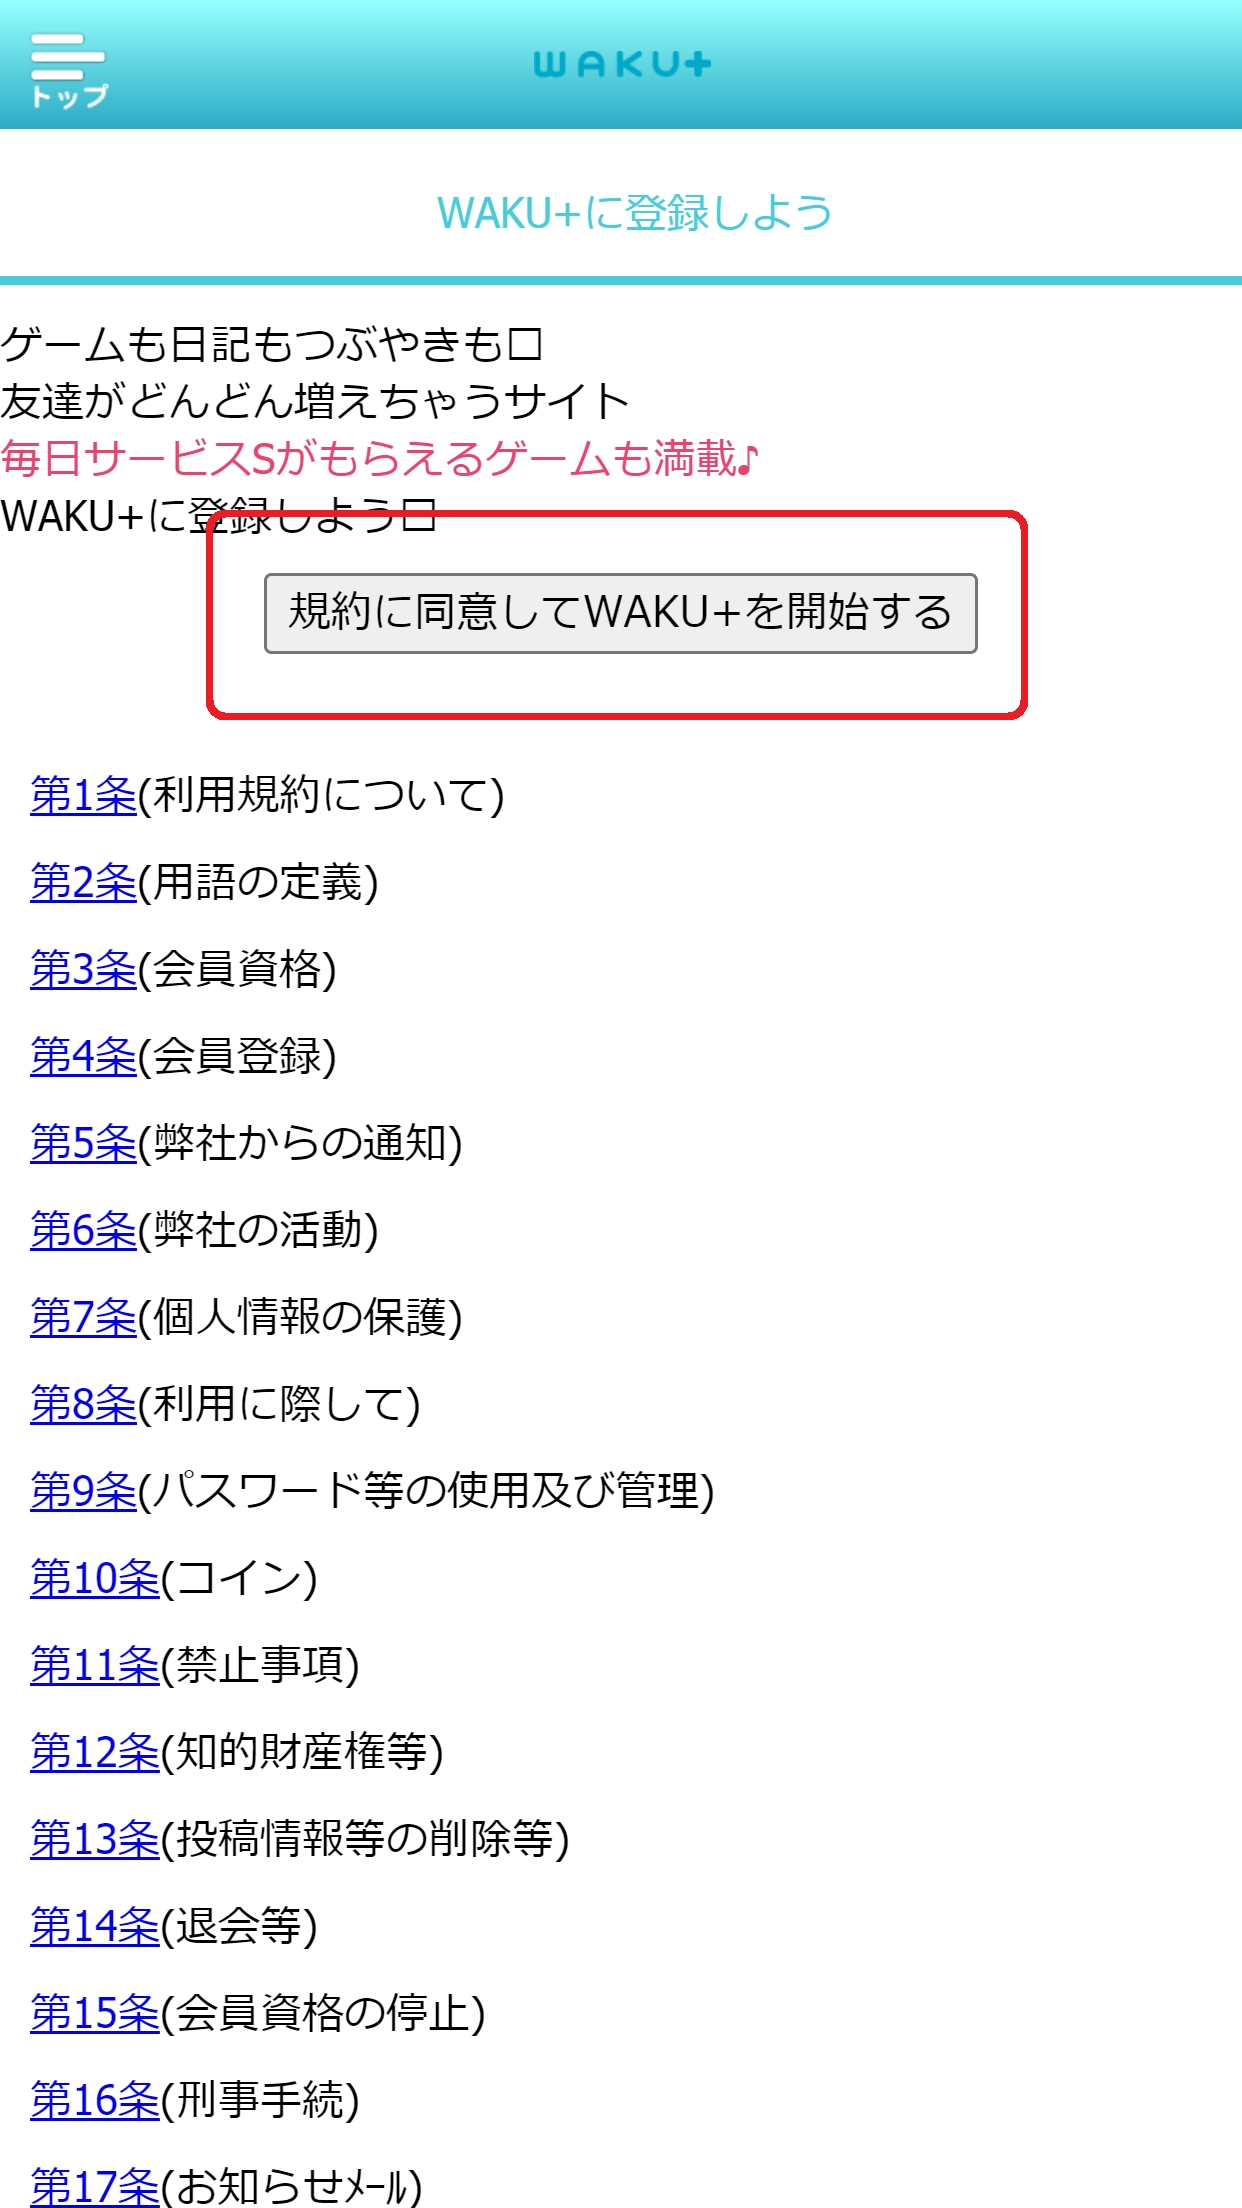 ワクワクメール waku+ ワクプラ